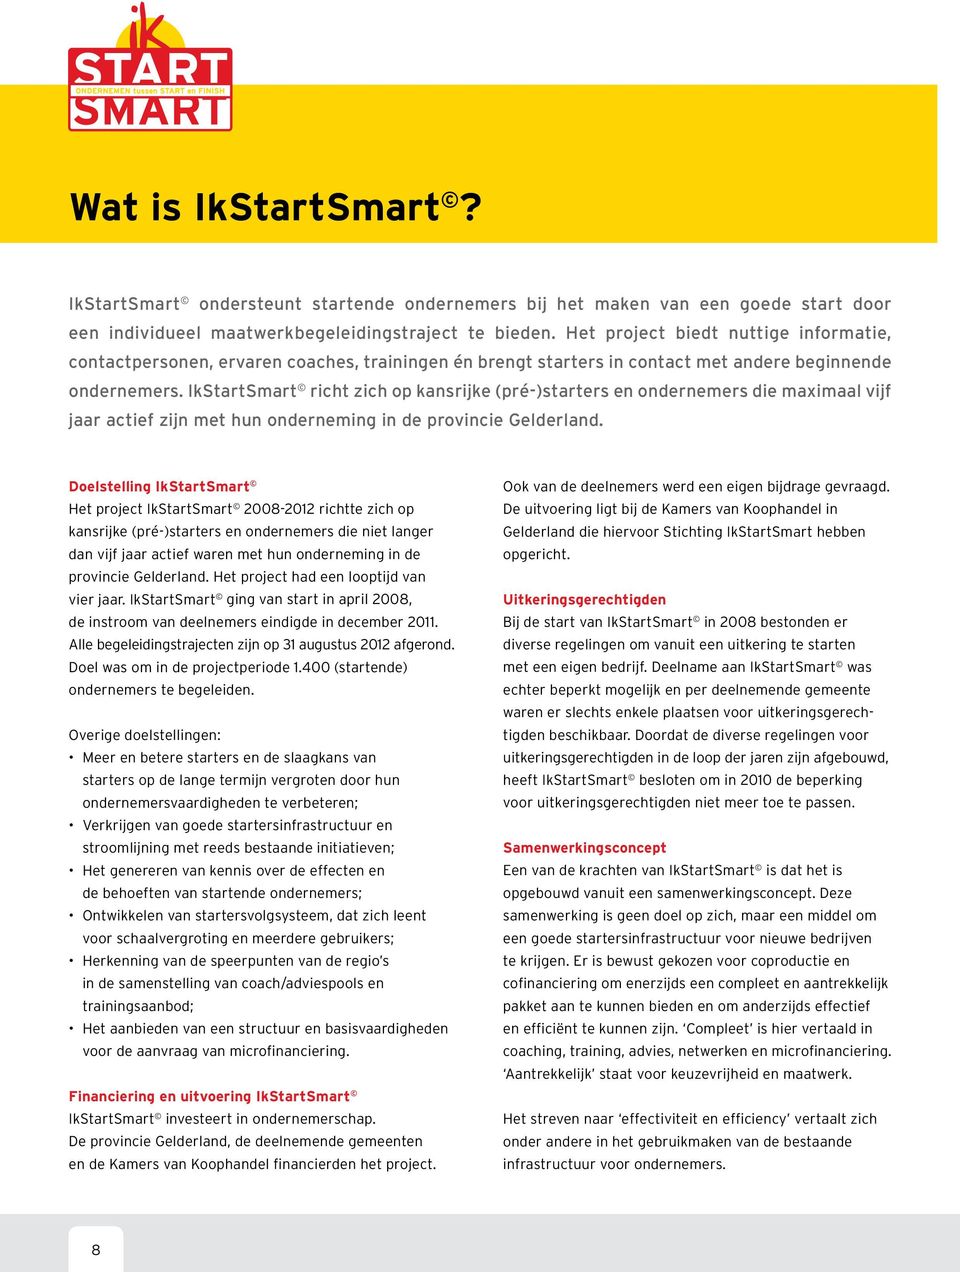 IkStartSmart richt zich op kansrijke (pré-)starters en ondernemers die maximaal vijf jaar actief zijn met hun onderneming in de provincie Gelderland.